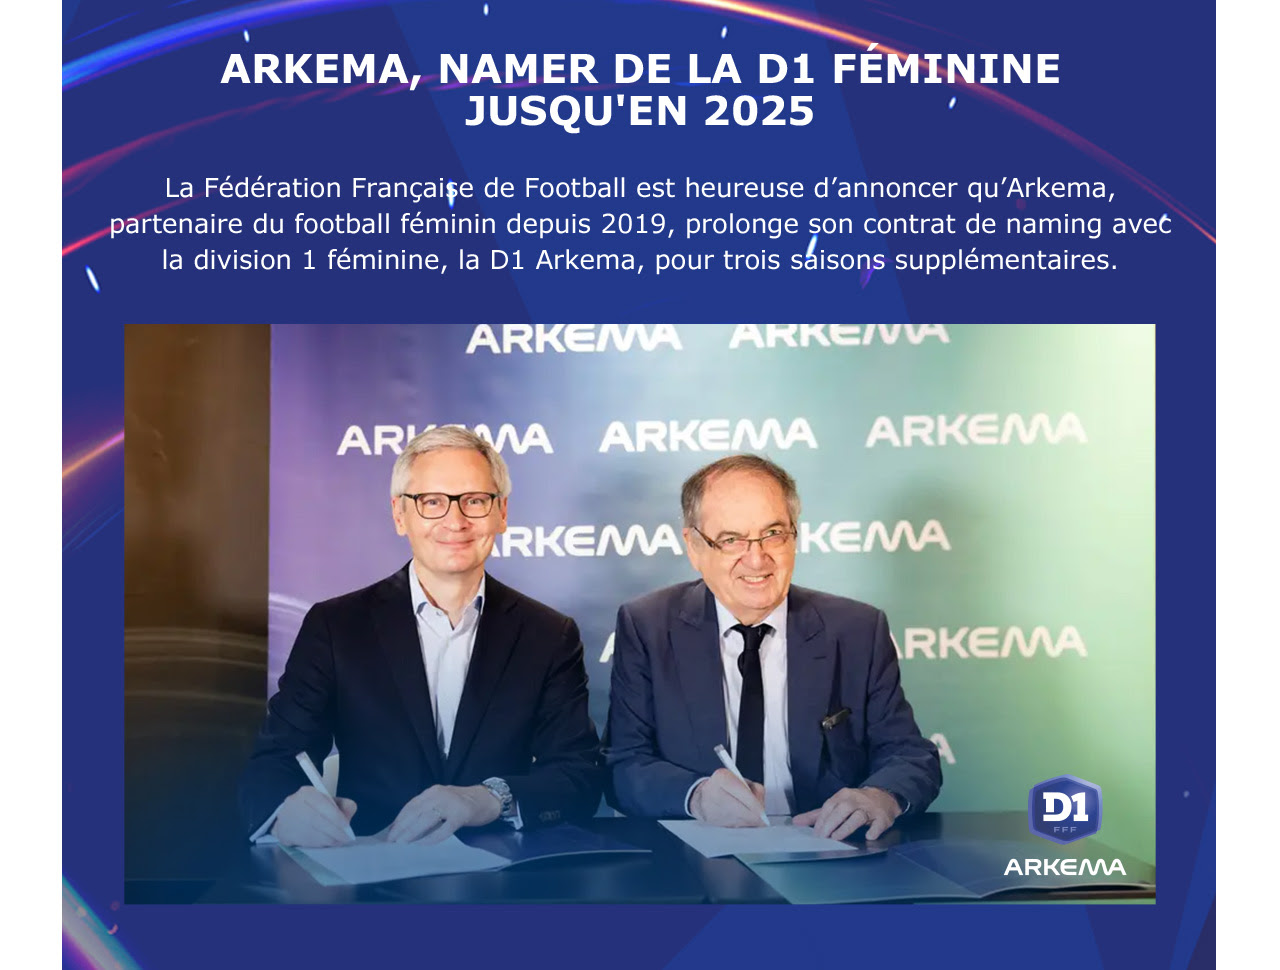 ARKEMA, NAMER DE LA D1 FÉMININE JUSQU'EN 2025 La Fédération Française de Football est heureuse d’annoncer qu’Arkema, partenaire du football féminin depuis 2019, prolonge son contrat de naming avec la division 1 féminine, la D1 Arkema, pour trois saisons supplémentaires. 